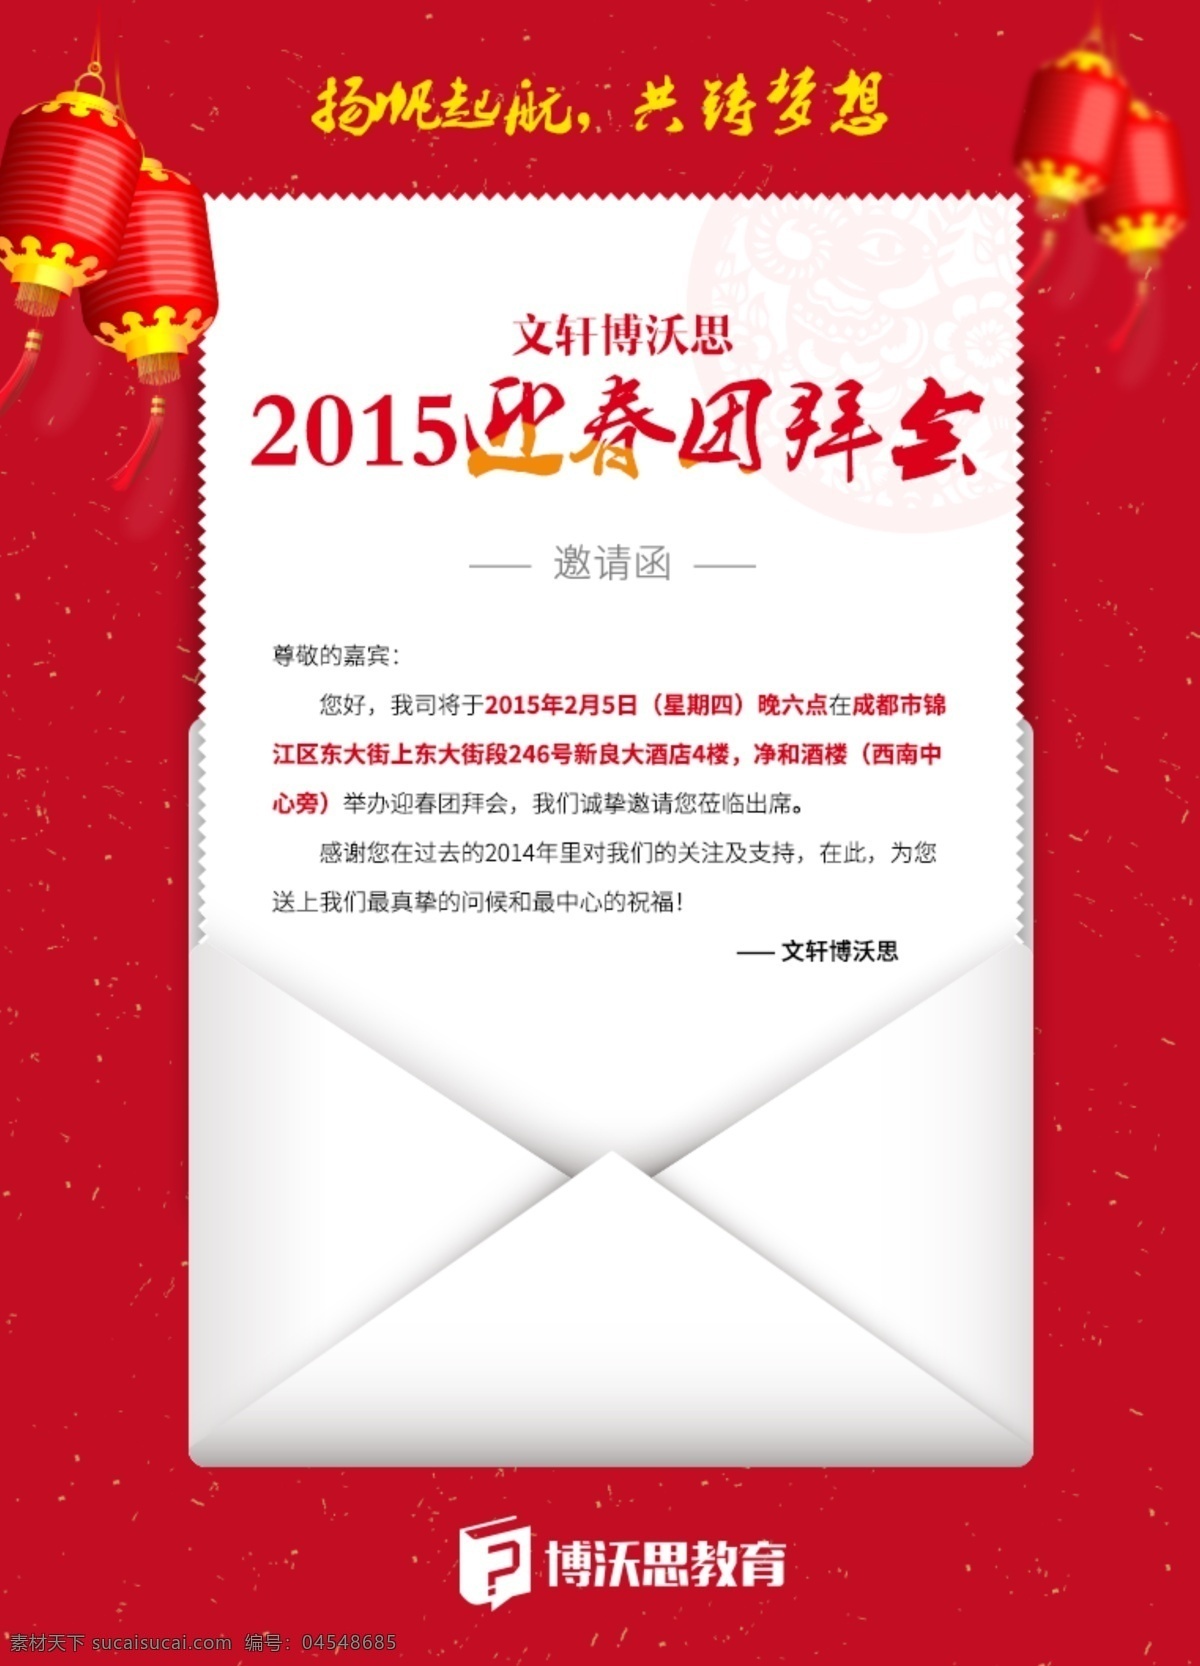 教育机构 2015 新春 年会 邀请函 教育 灯笼 红纸